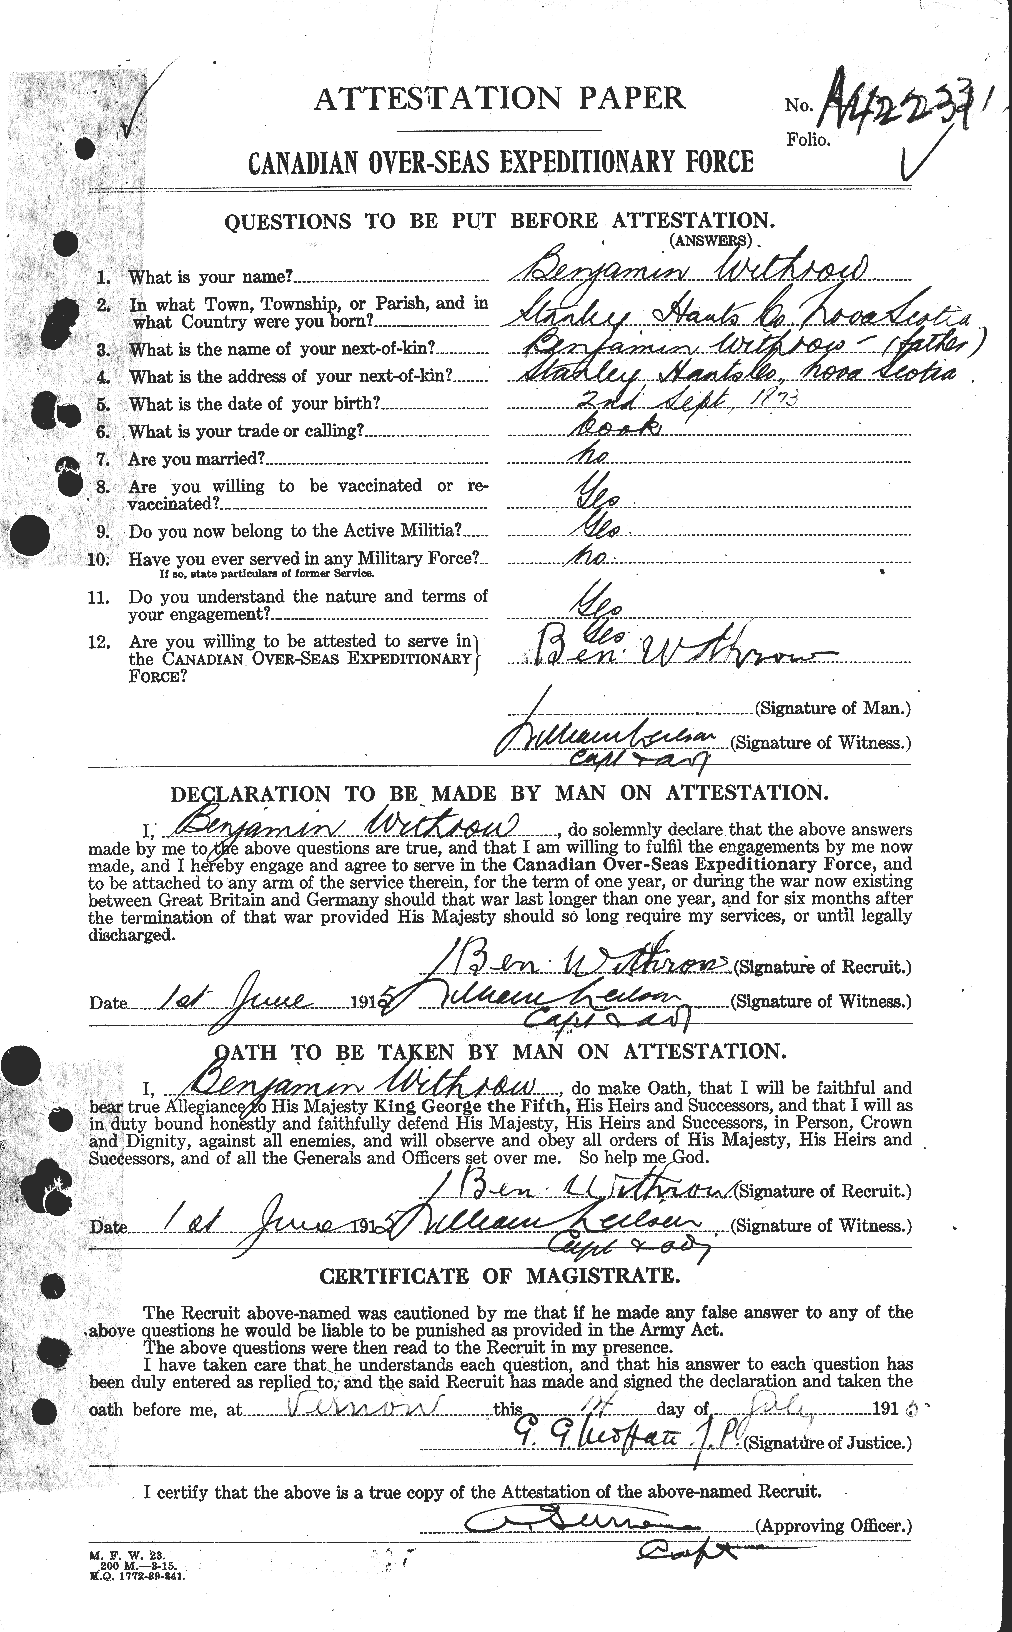 Dossiers du Personnel de la Première Guerre mondiale - CEC 682084a